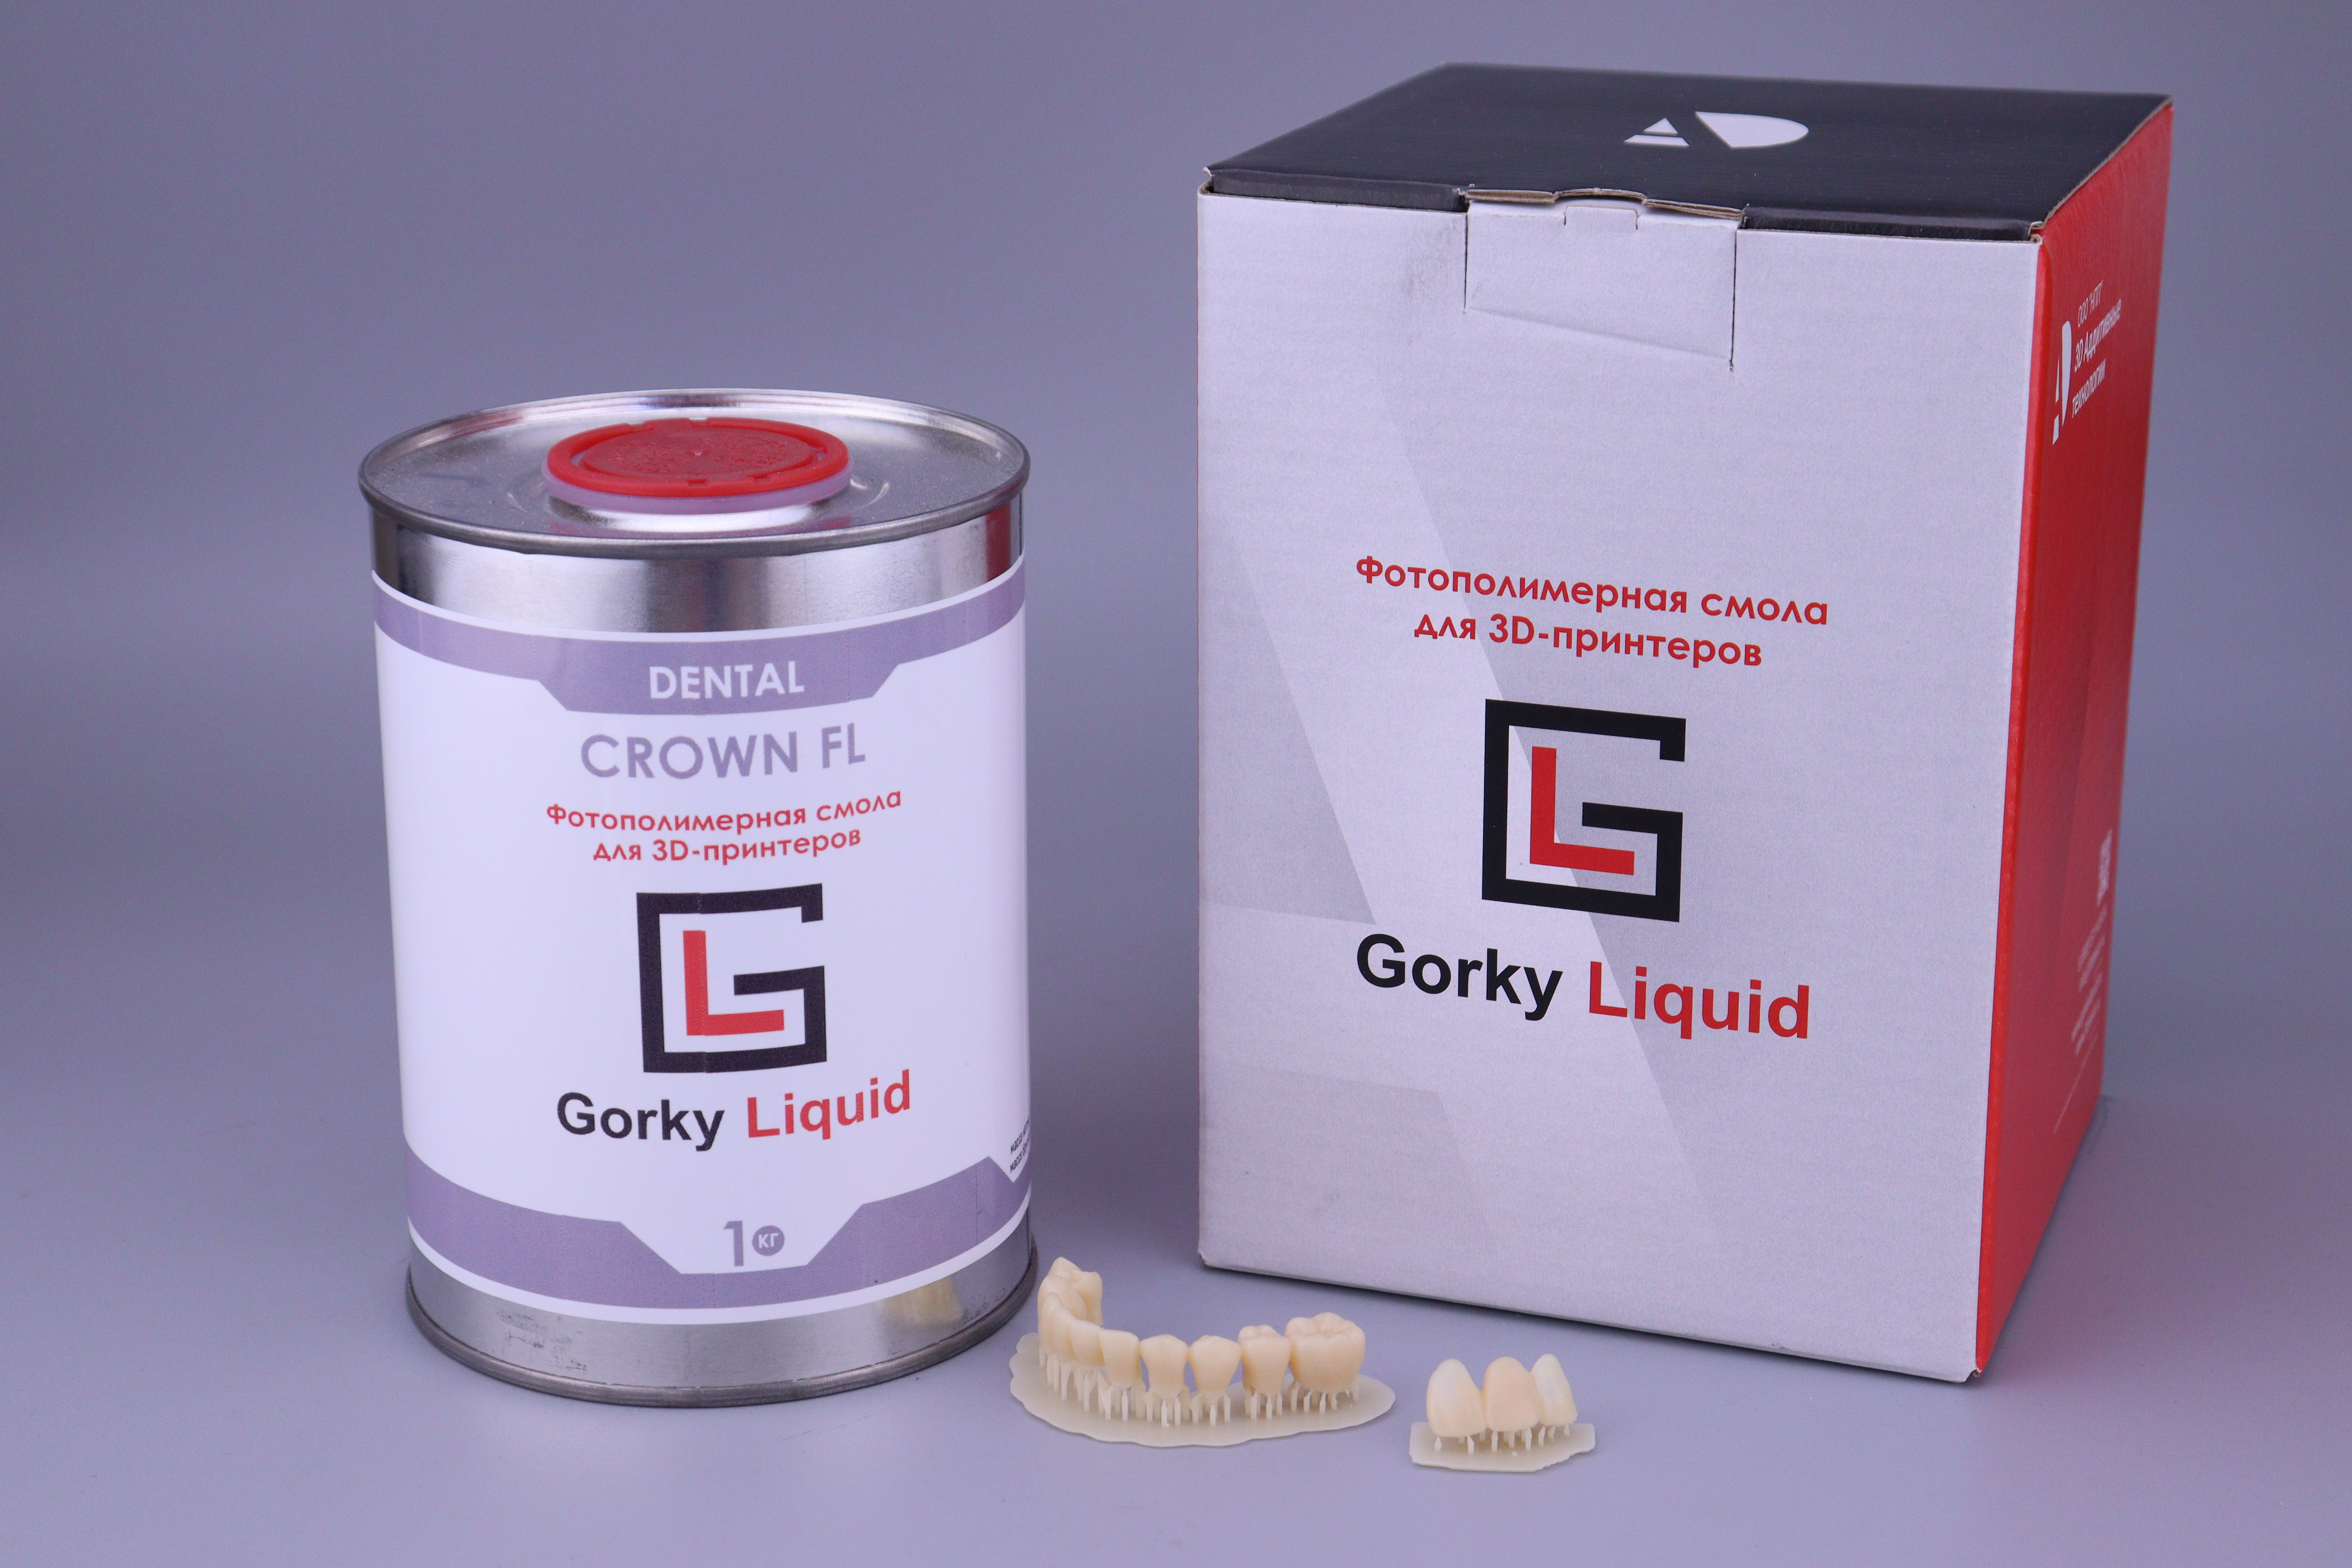 "Dental Crown" A3 FL 1 кг фотополимерная смола Gorky Liquid